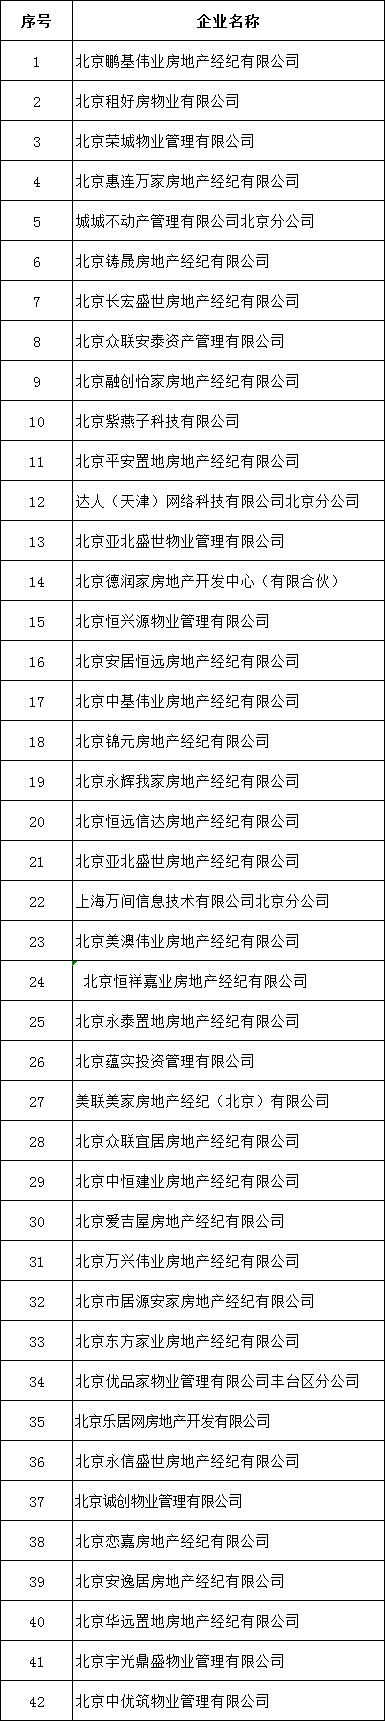 北京公布42家违法违规中介企业名单，提示消费者谨慎选择